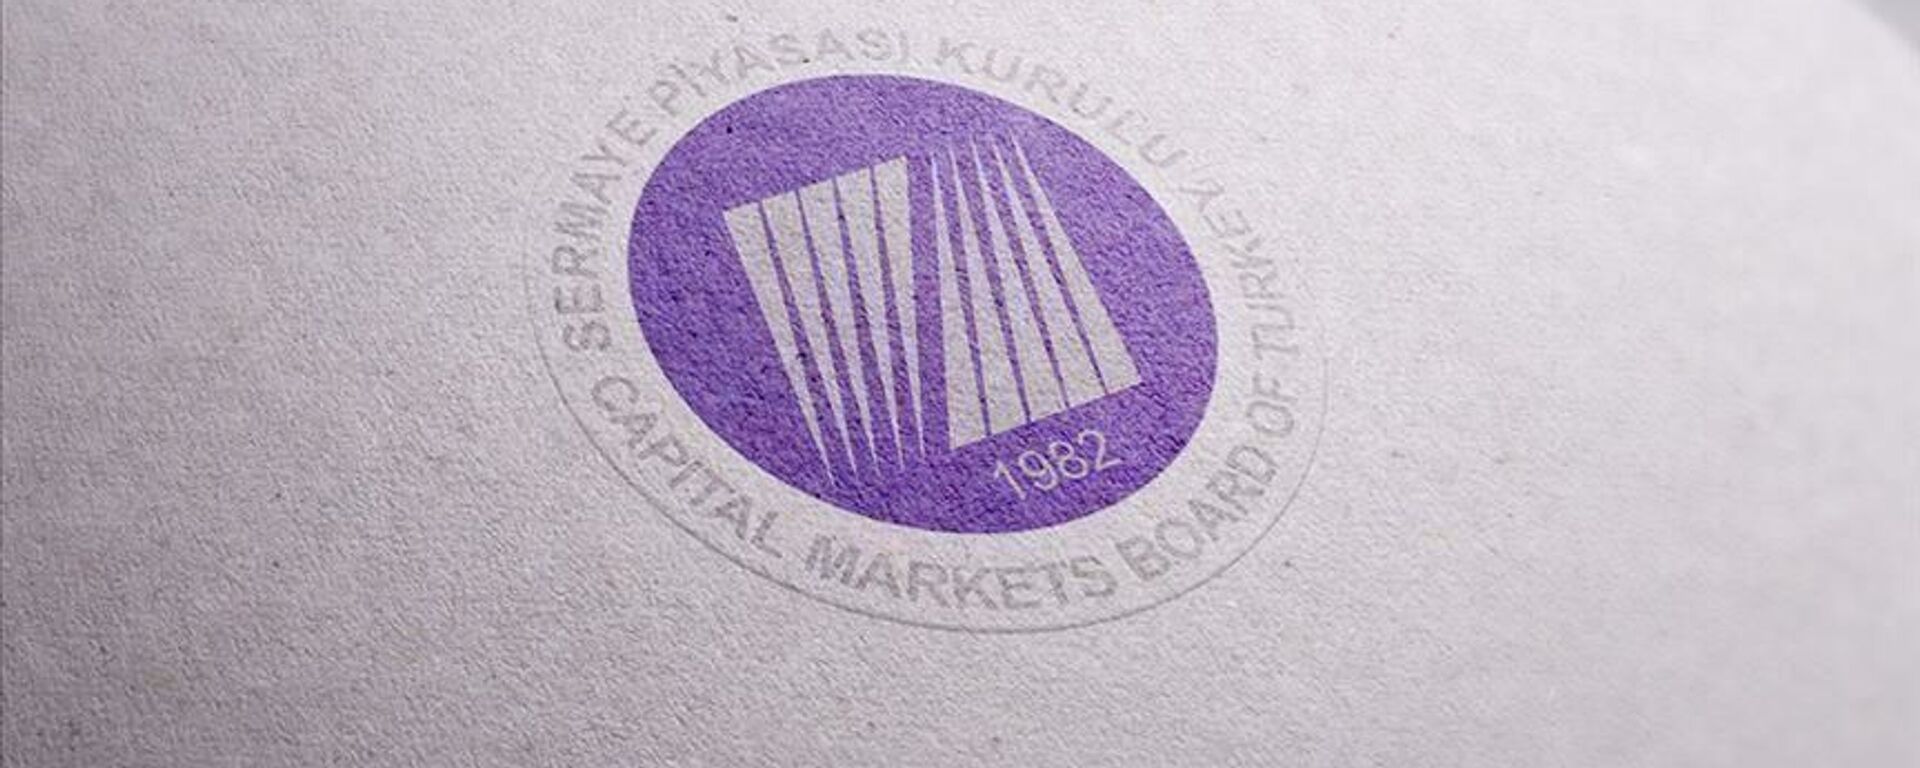 Sermaye Piyasası Kurulu - SPK - Sputnik Türkiye, 1920, 10.06.2022